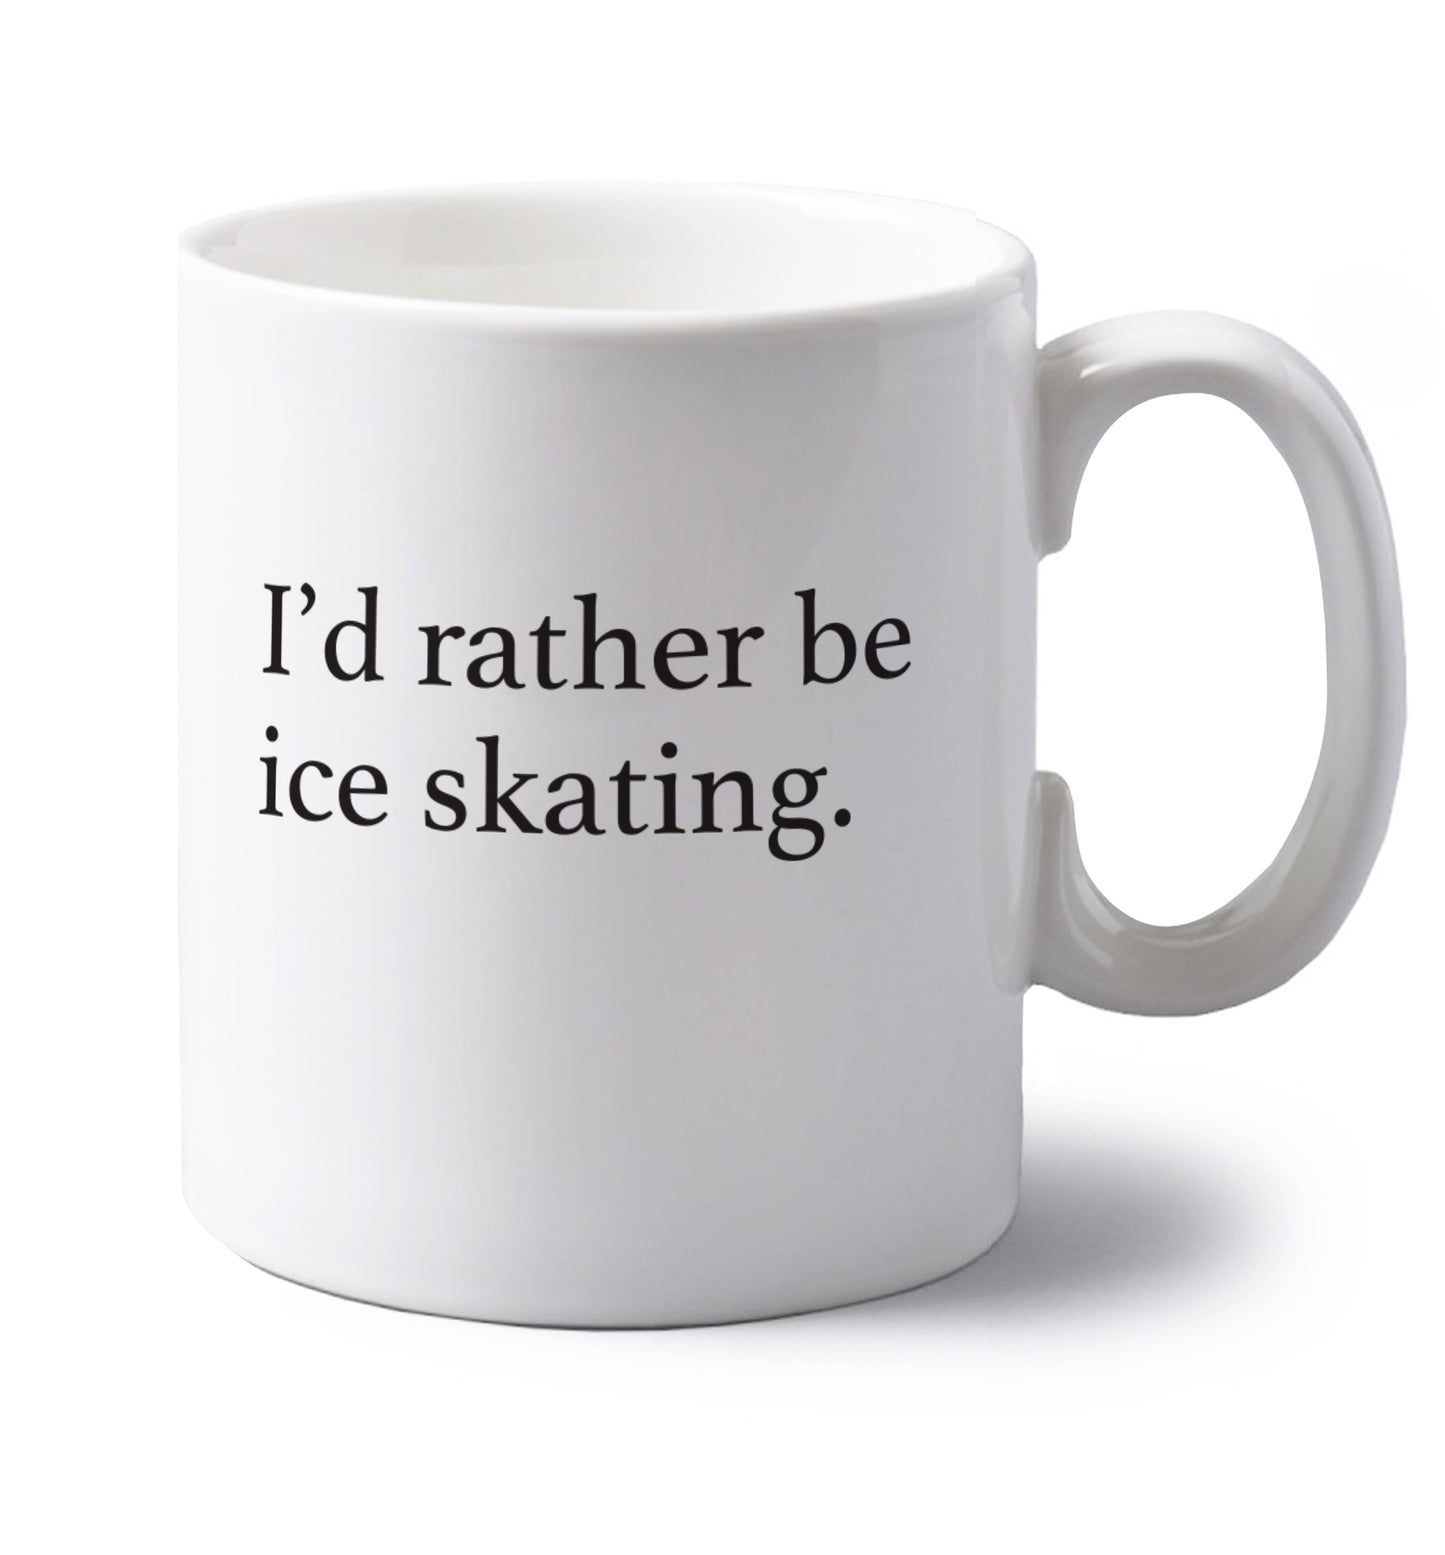 I'd rather be ice skating left handed white ceramic mug 